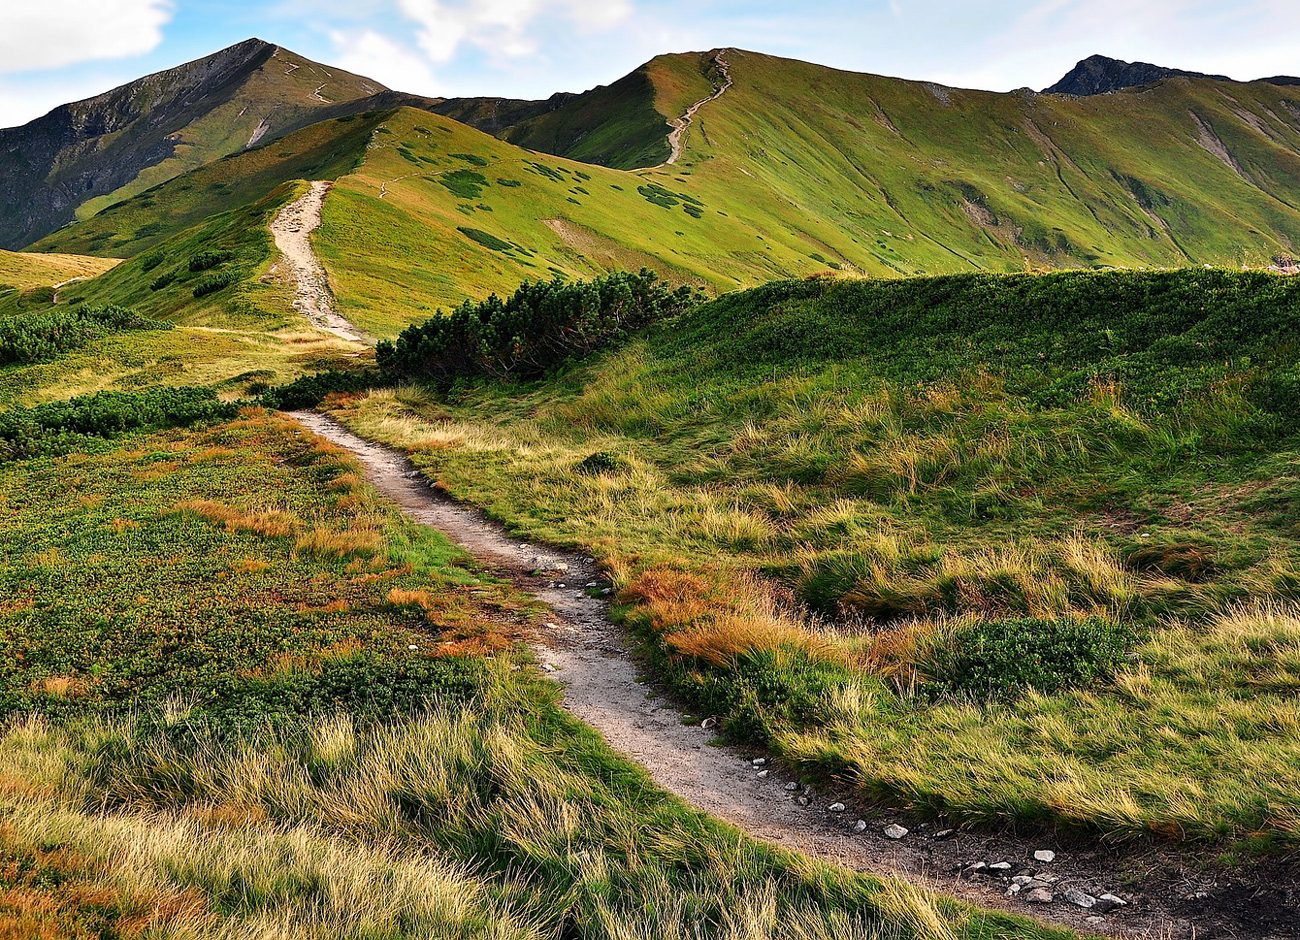 an empty trail traverses a mountainous landscape